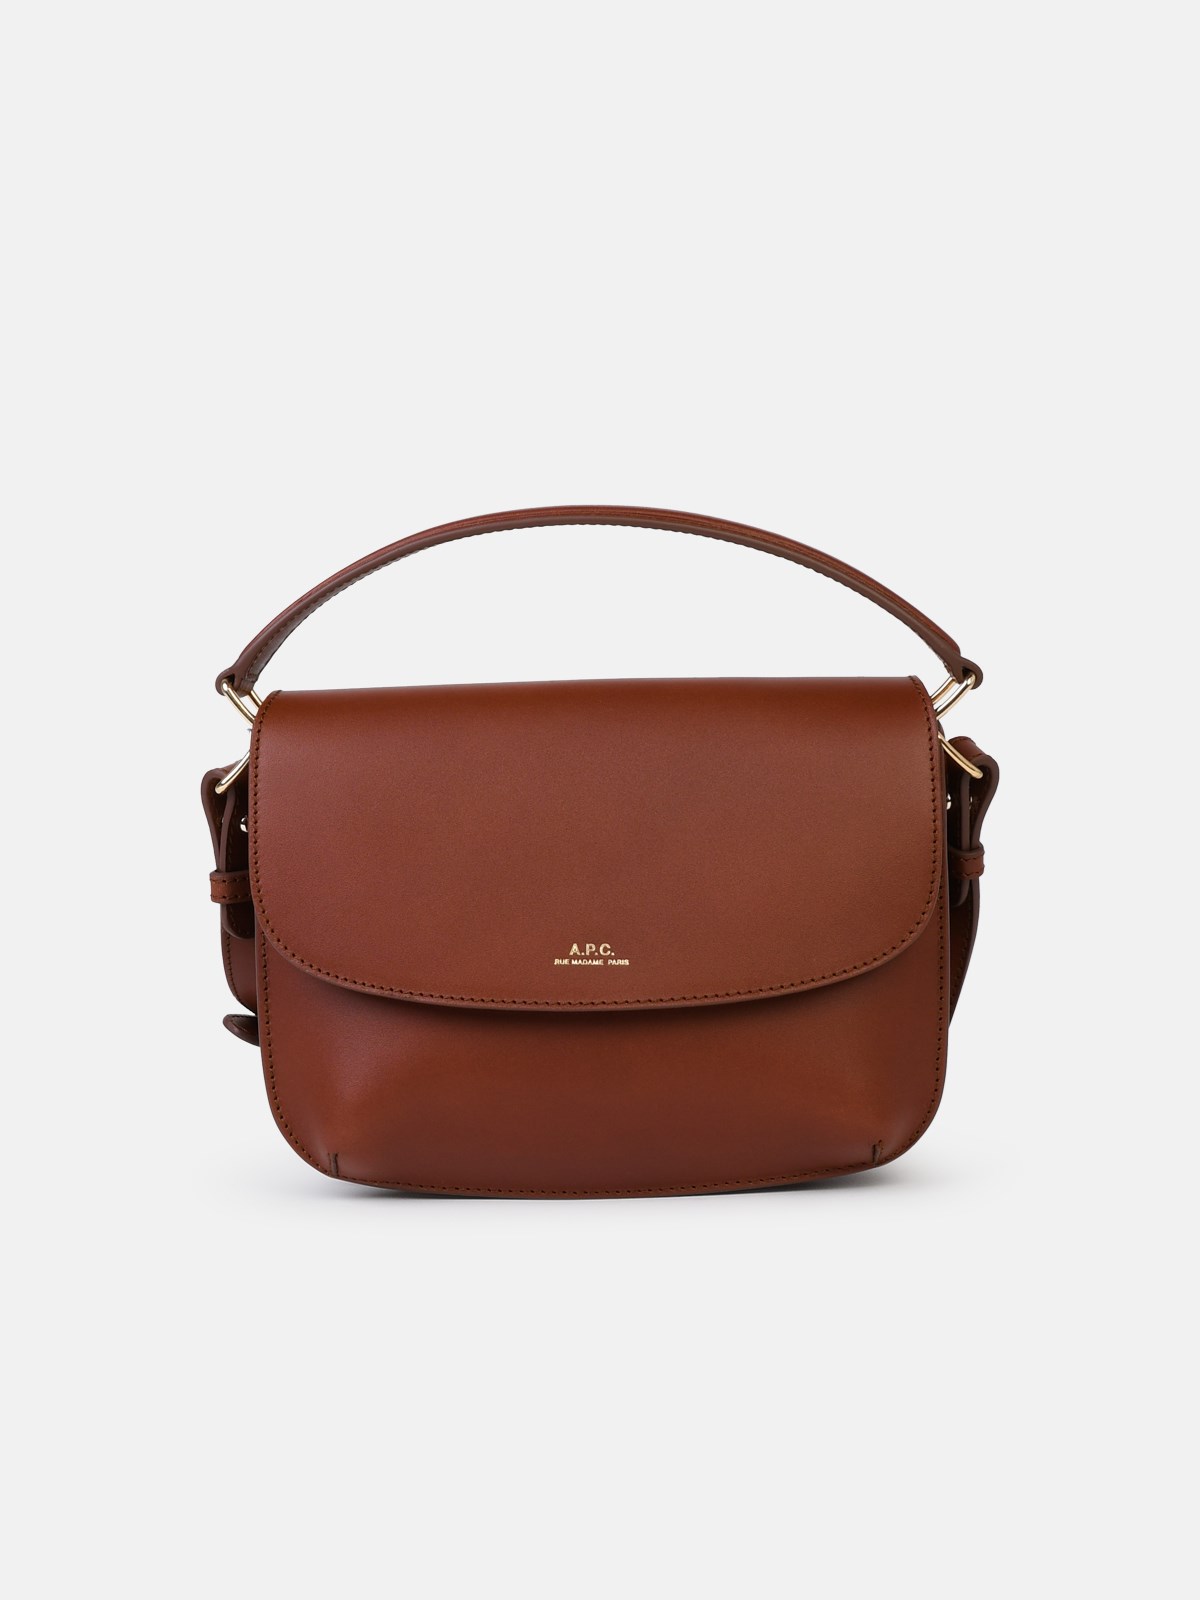 Apc Small 'sarah' Brown Leather Bag